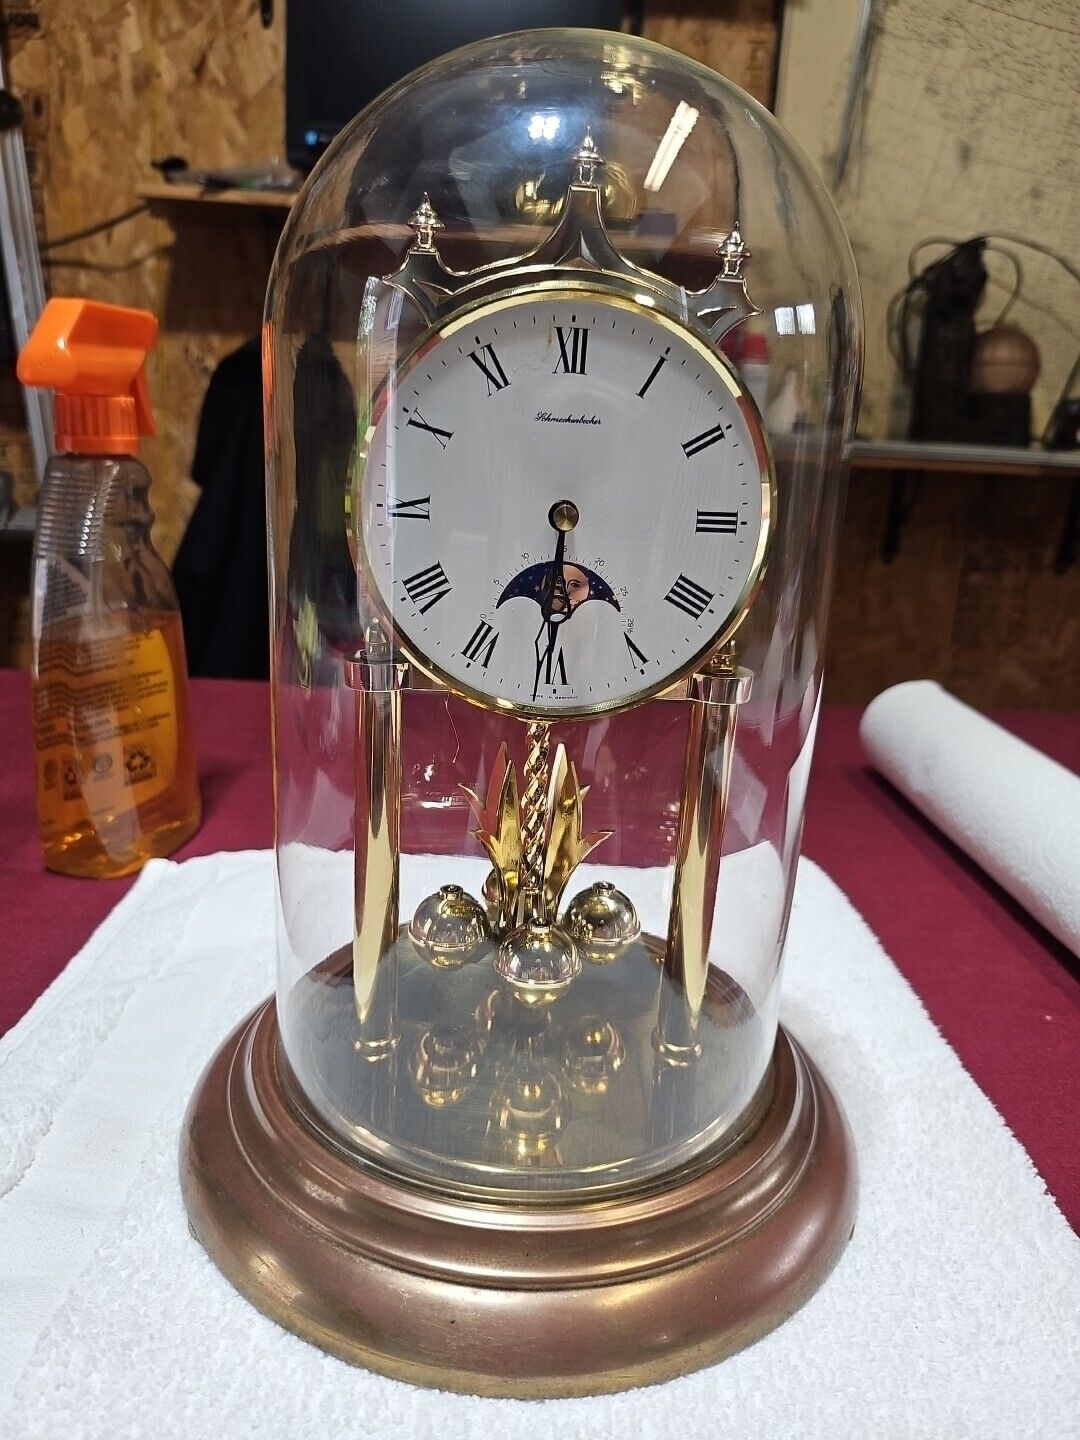 Schmeckenbecher Anniversary Clock